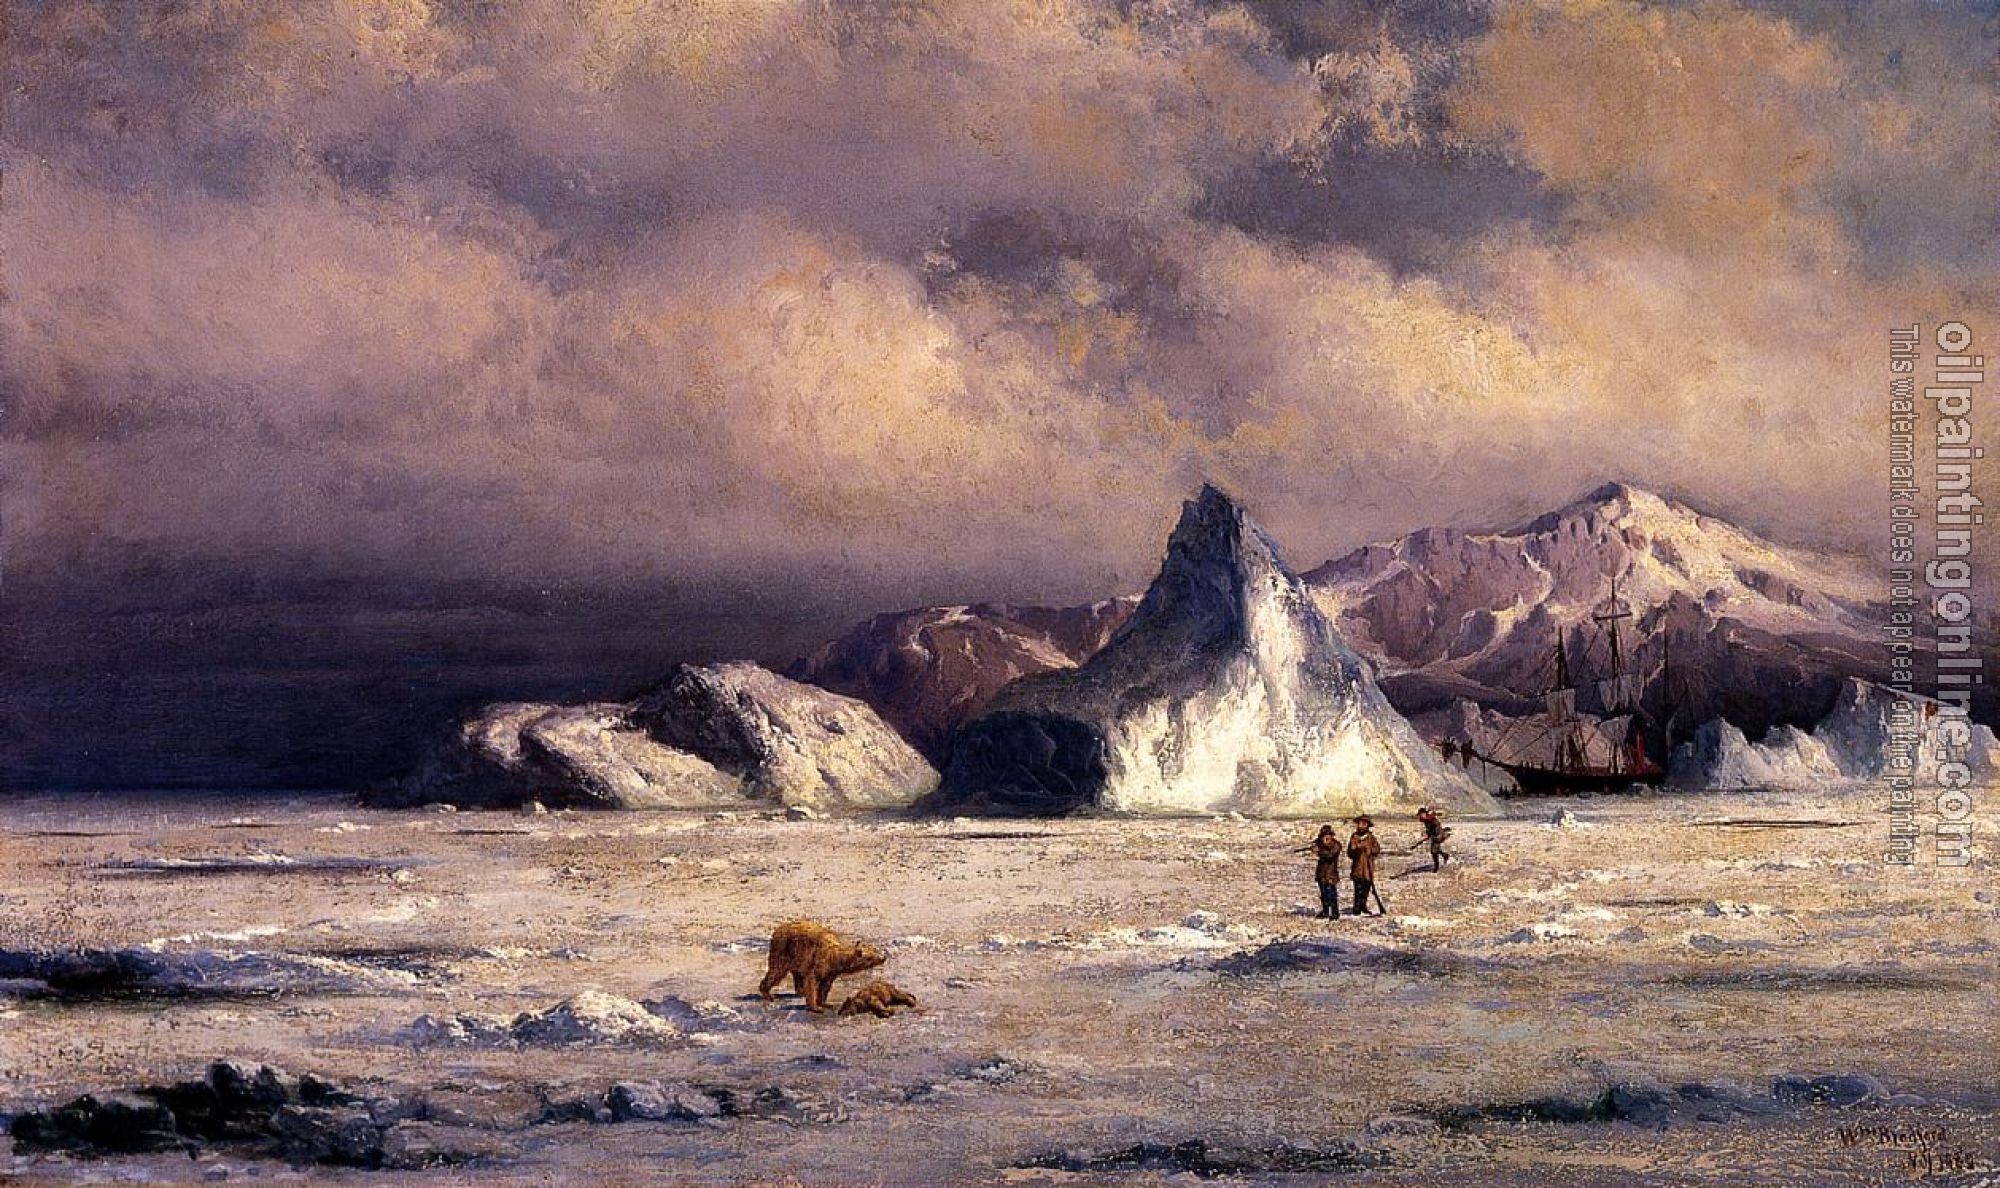 William Bradford - Arctic Invaders